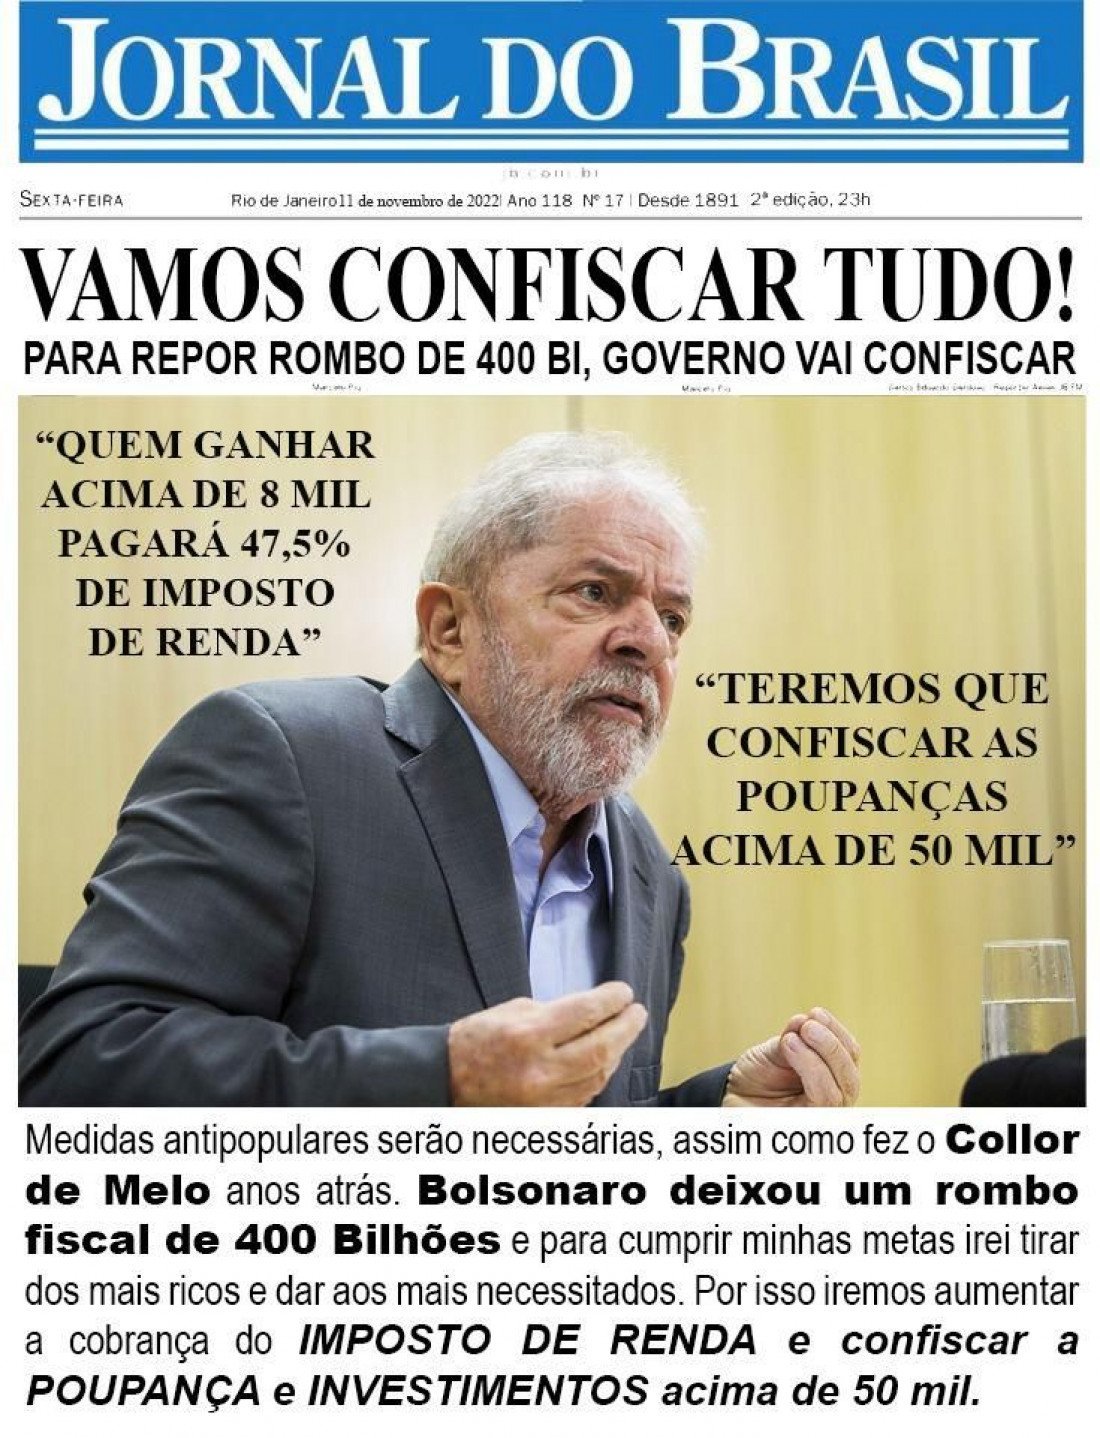 Editora do Estadão divulga salário de assessor da Secom que desmentiu fake  news sobre Lula - Brasil 247